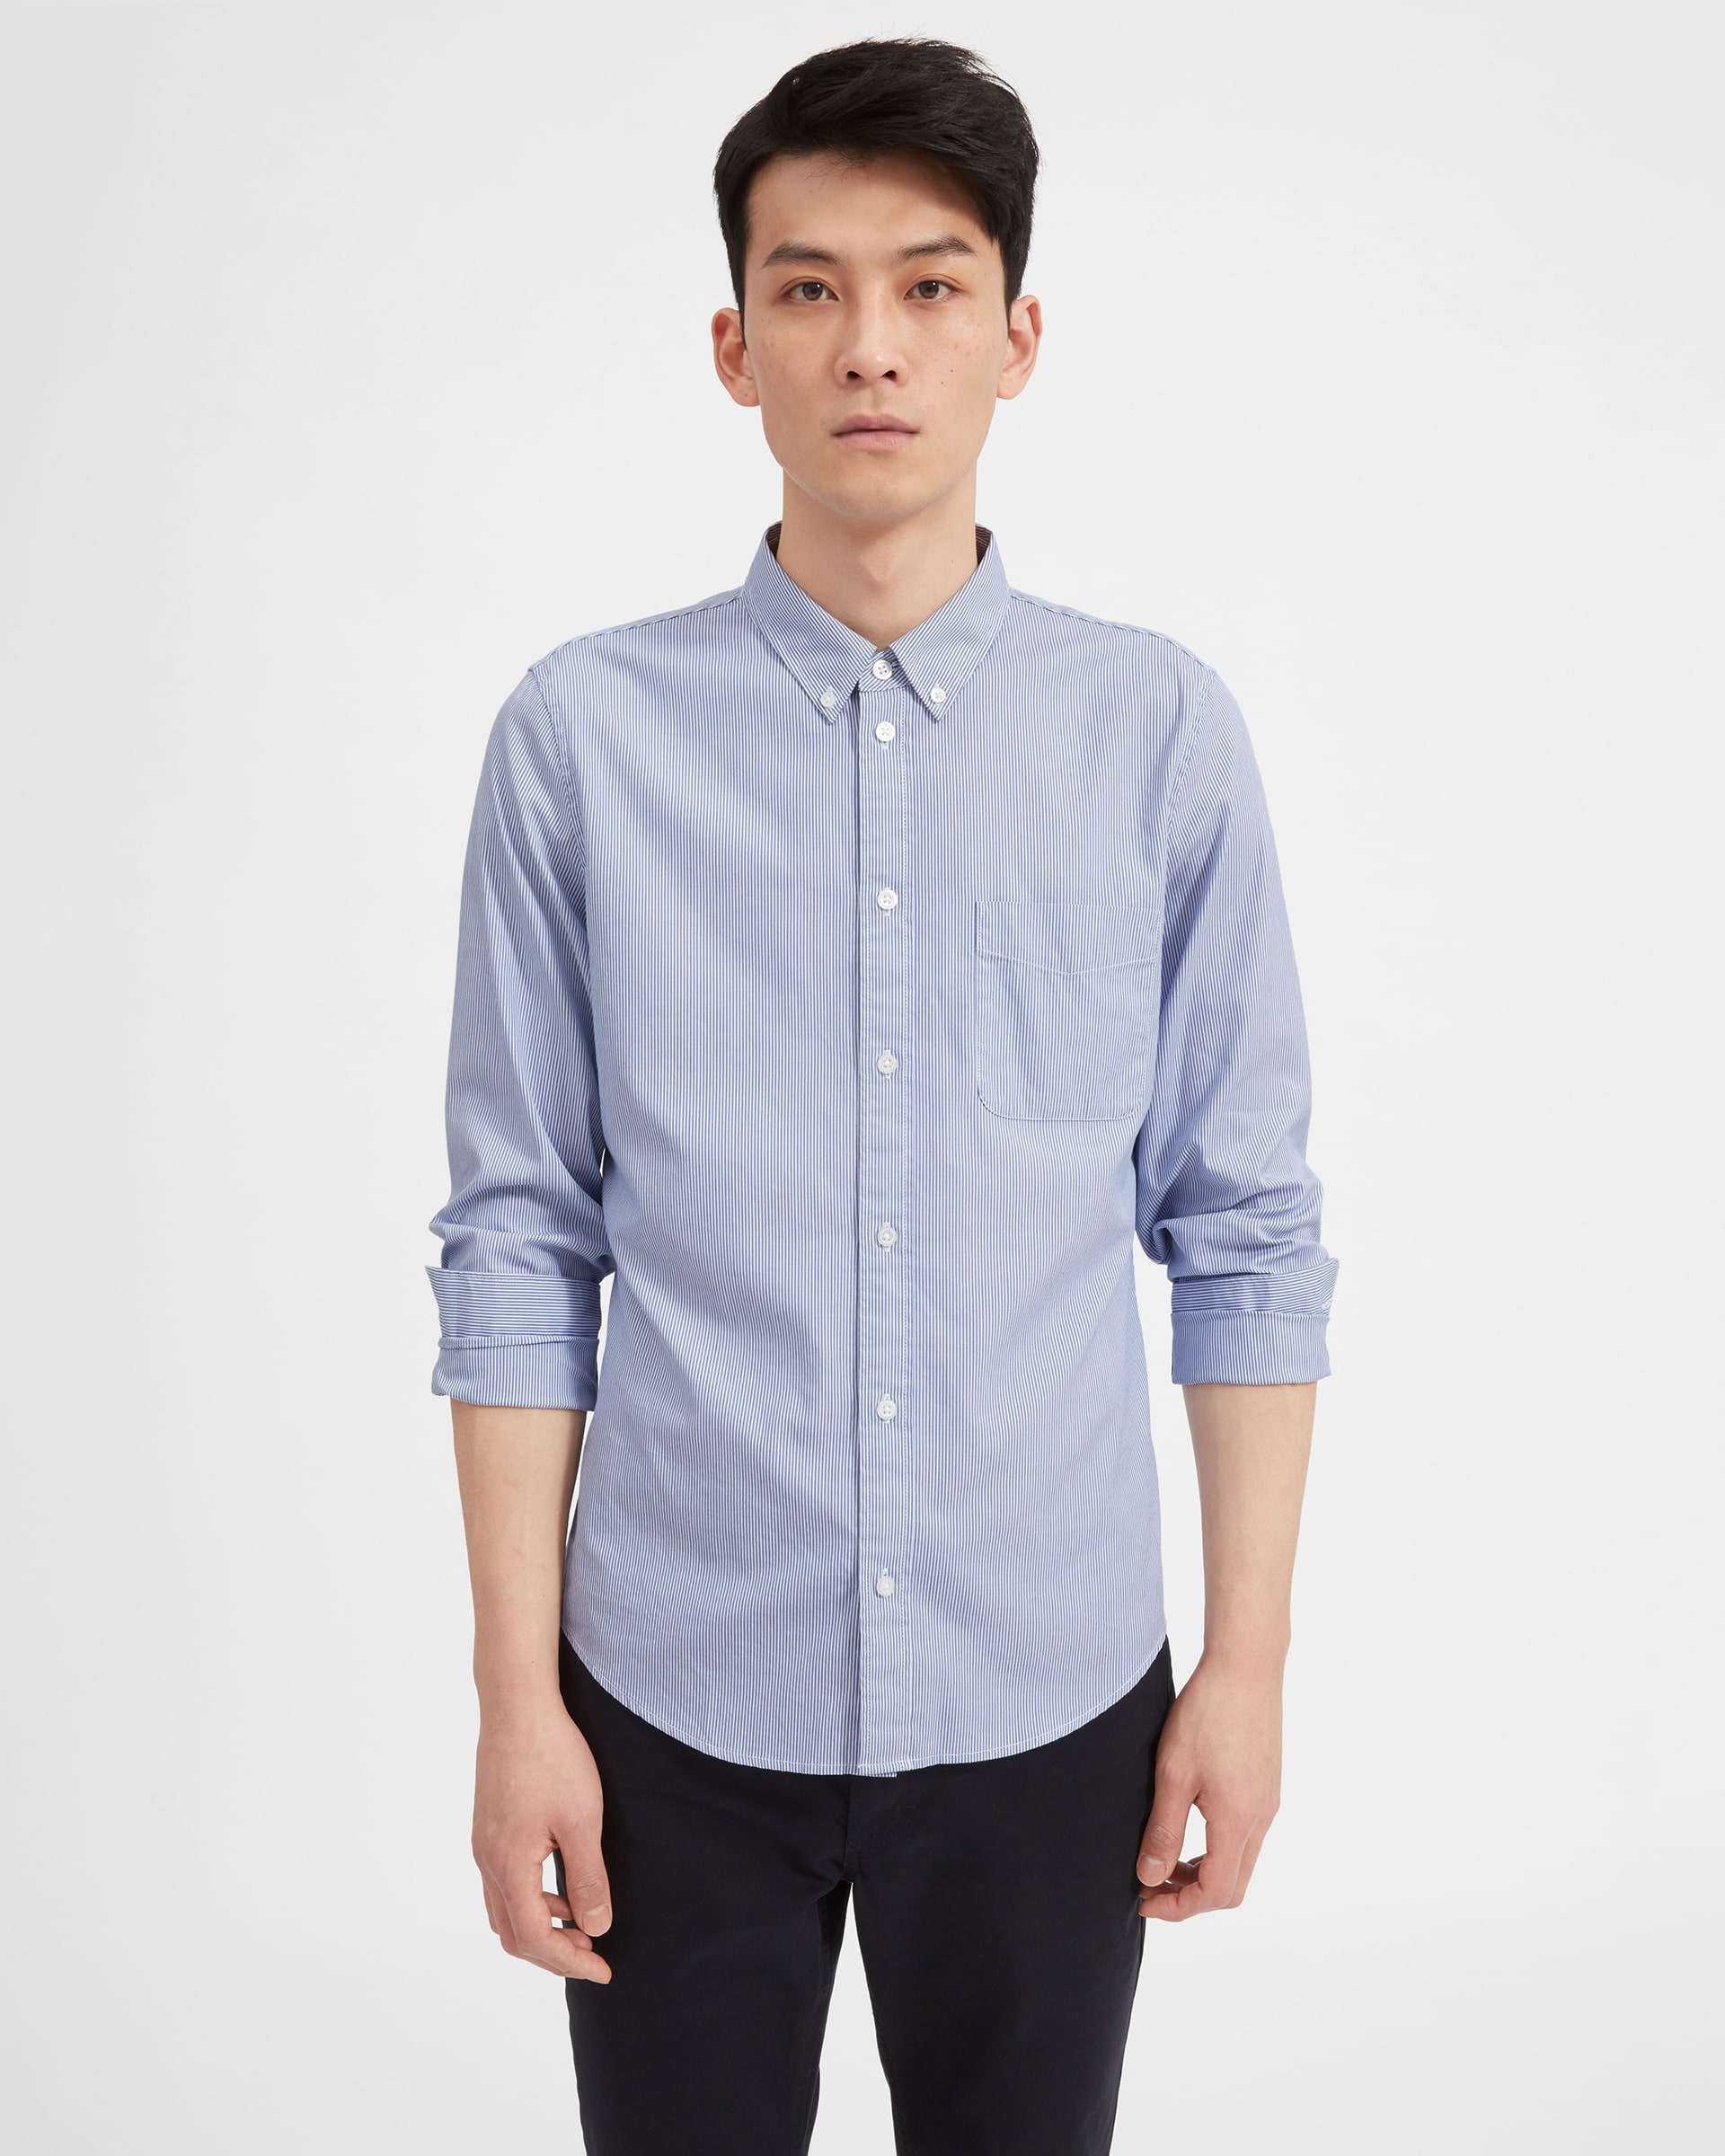 The Air Oxford Shirt White / Blue Mini Stripe – Everlane